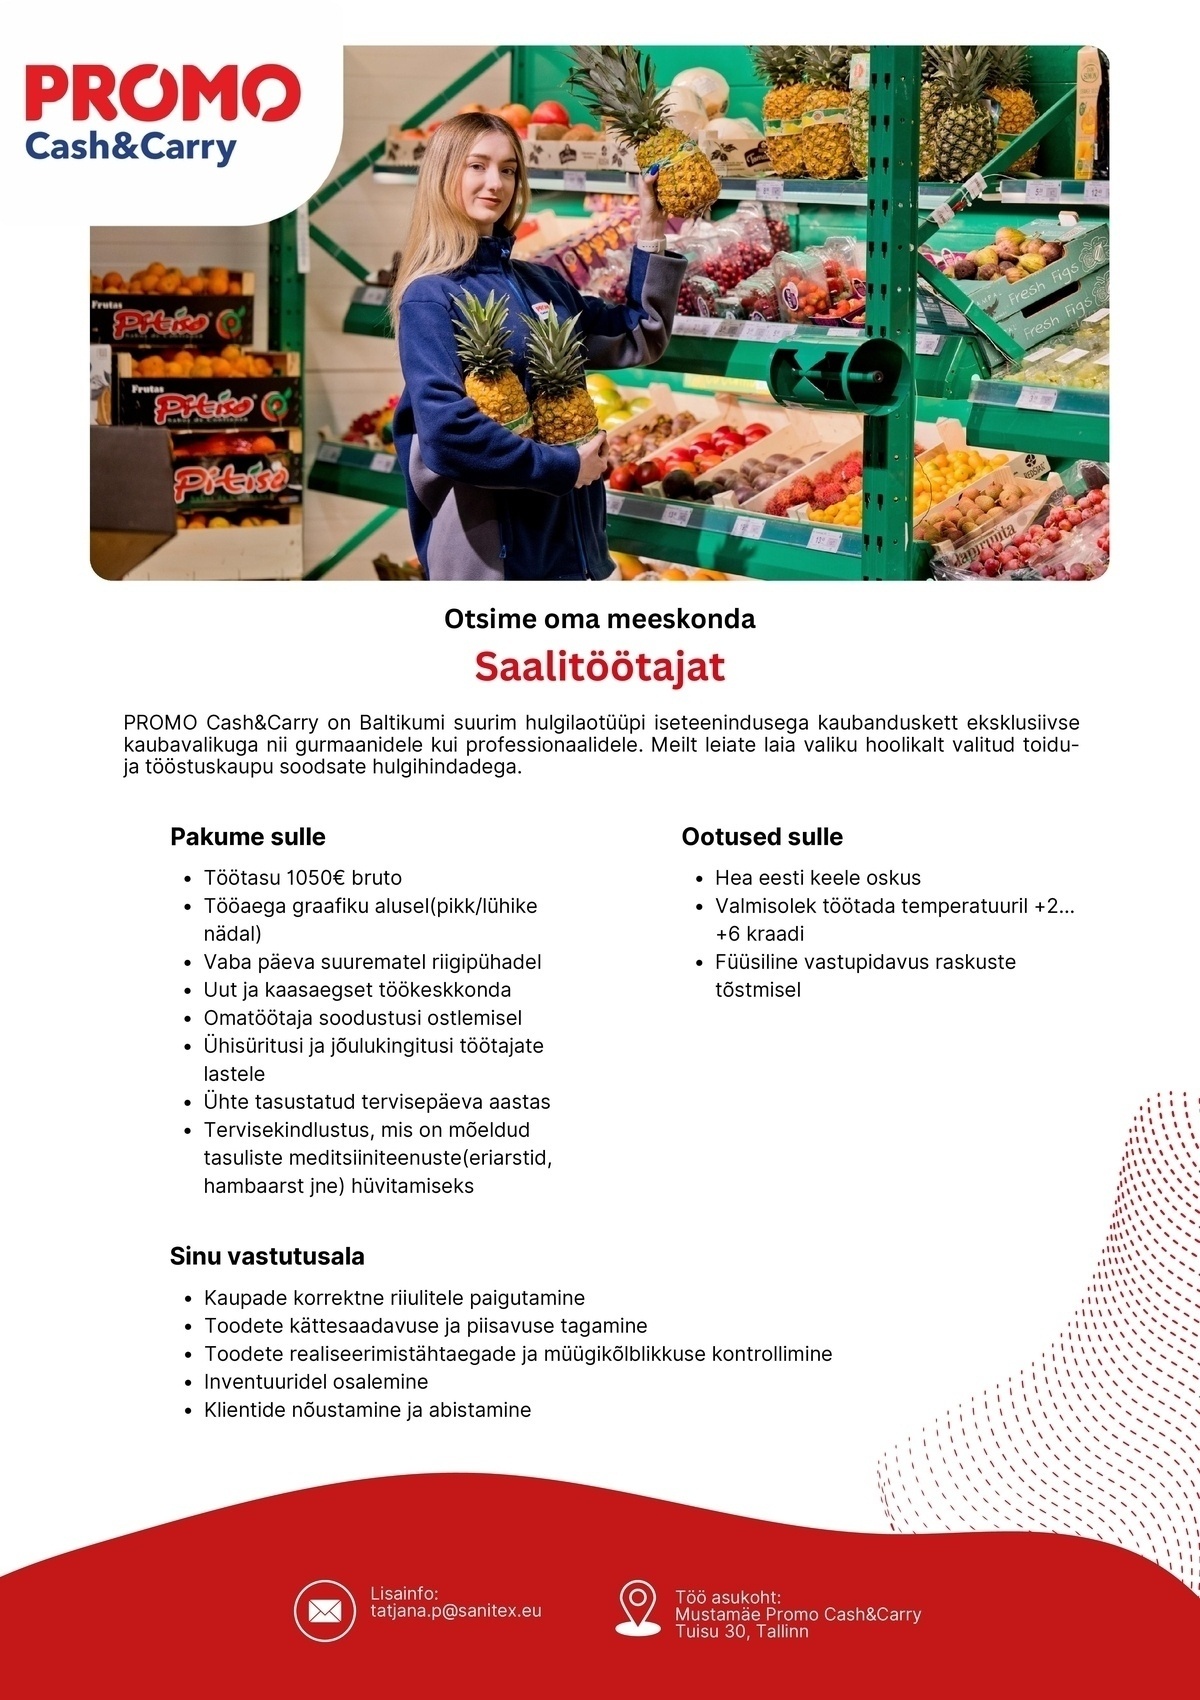 Sanitex OÜ Saalitöötaja termokaupade müügisaalis Mustamäe Promo Cash&Carry hulgikaupluses